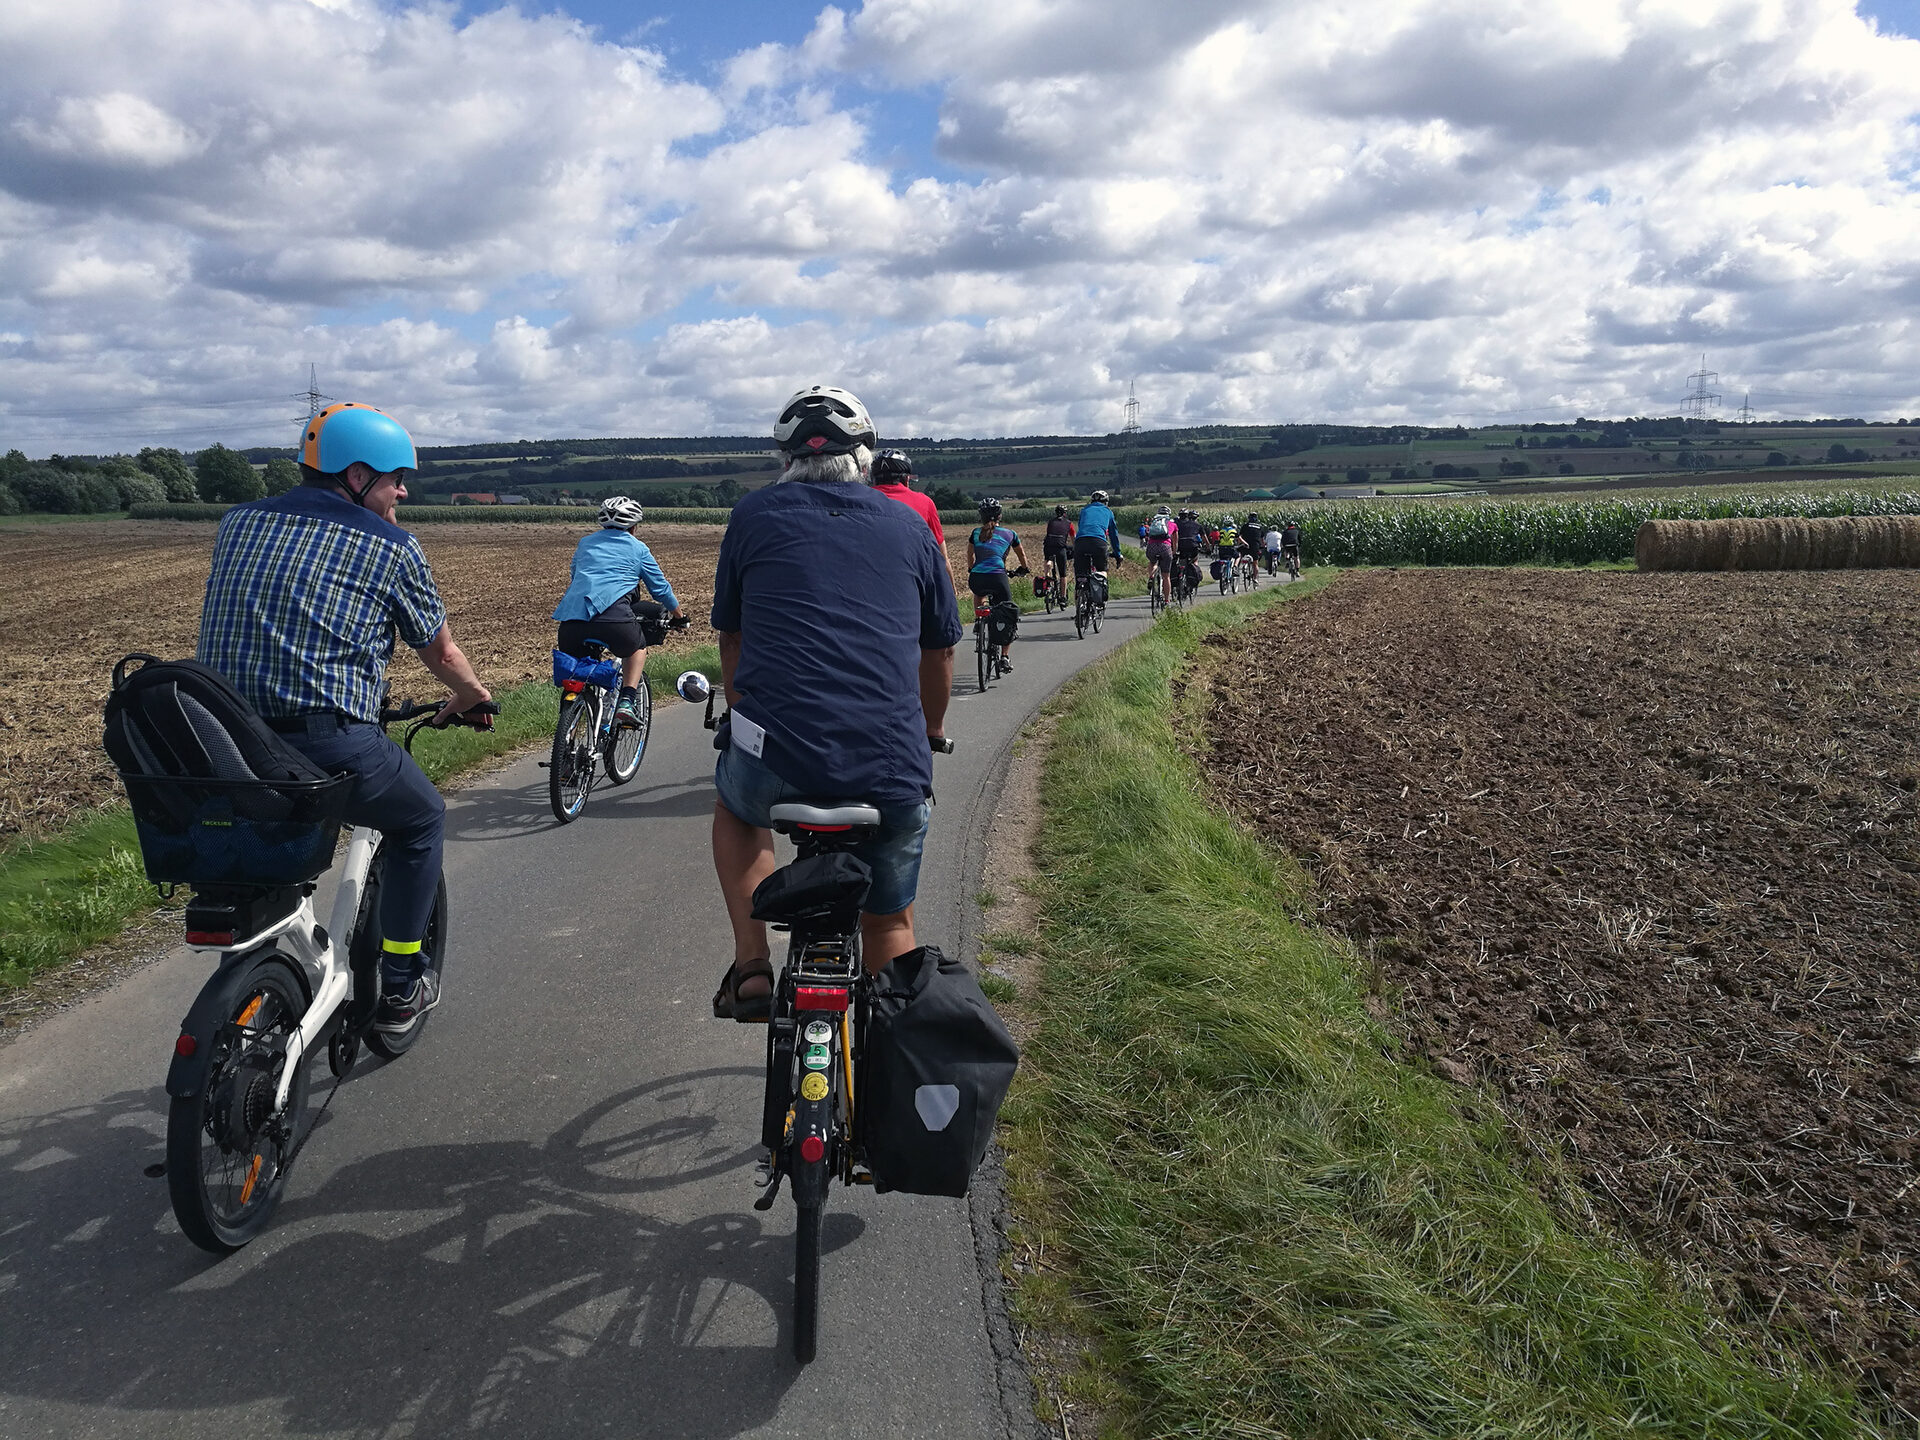 Die Land-Rad-Tour bietet die Gelegenheit interessante Projekte aus den Bereichen Tourismus und Radverkehr im Landkreis Kassel näher kennenzulernen. Und natürlich ist auch Zeit für Gespräche.